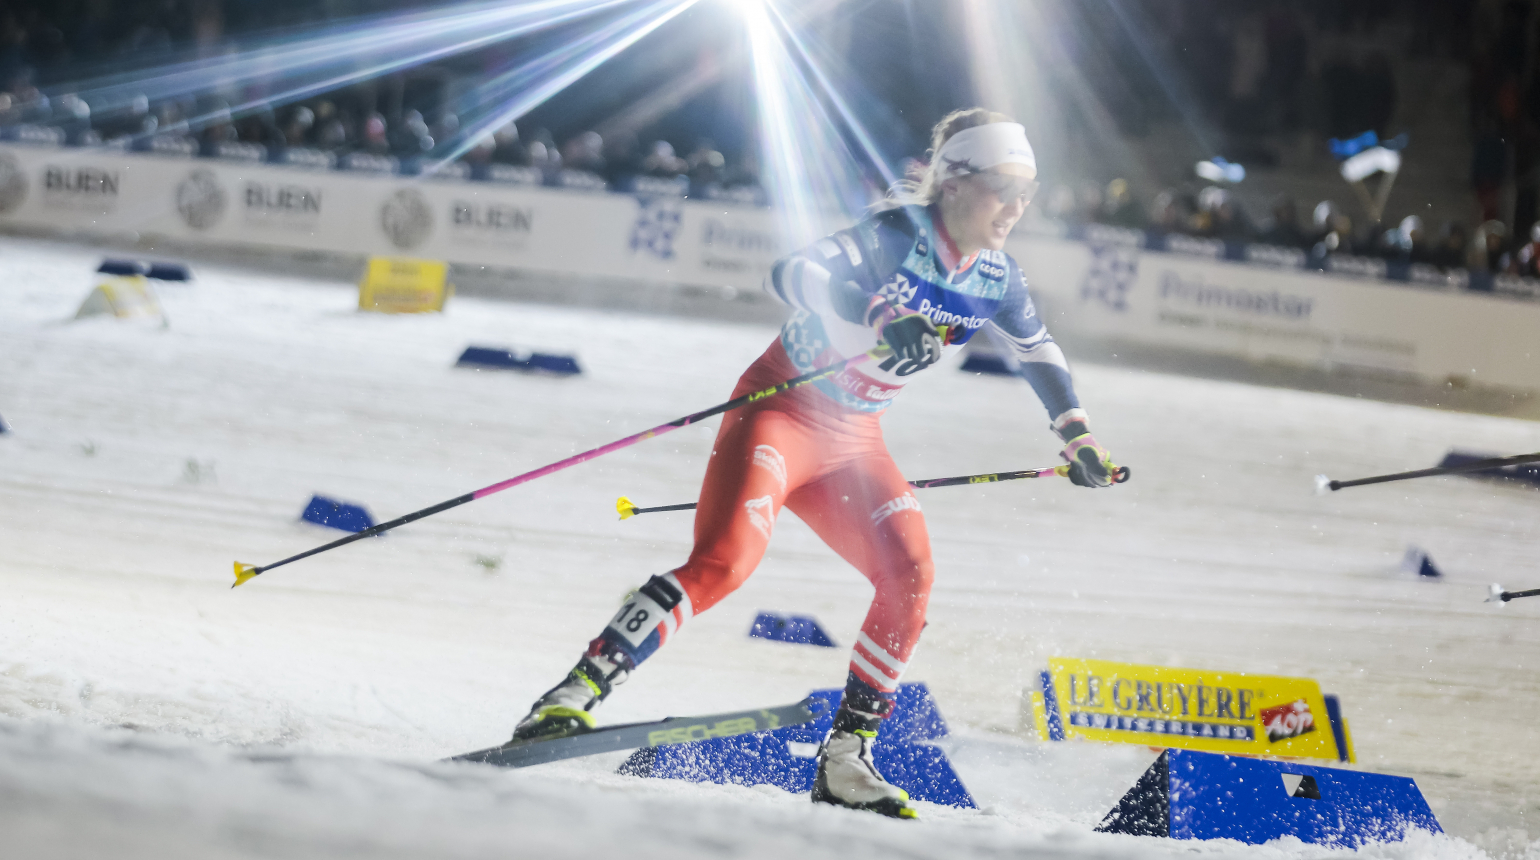 Složení reprezentačních týmů běžců na lyžích odtajněno. Jak se skládala nominace?